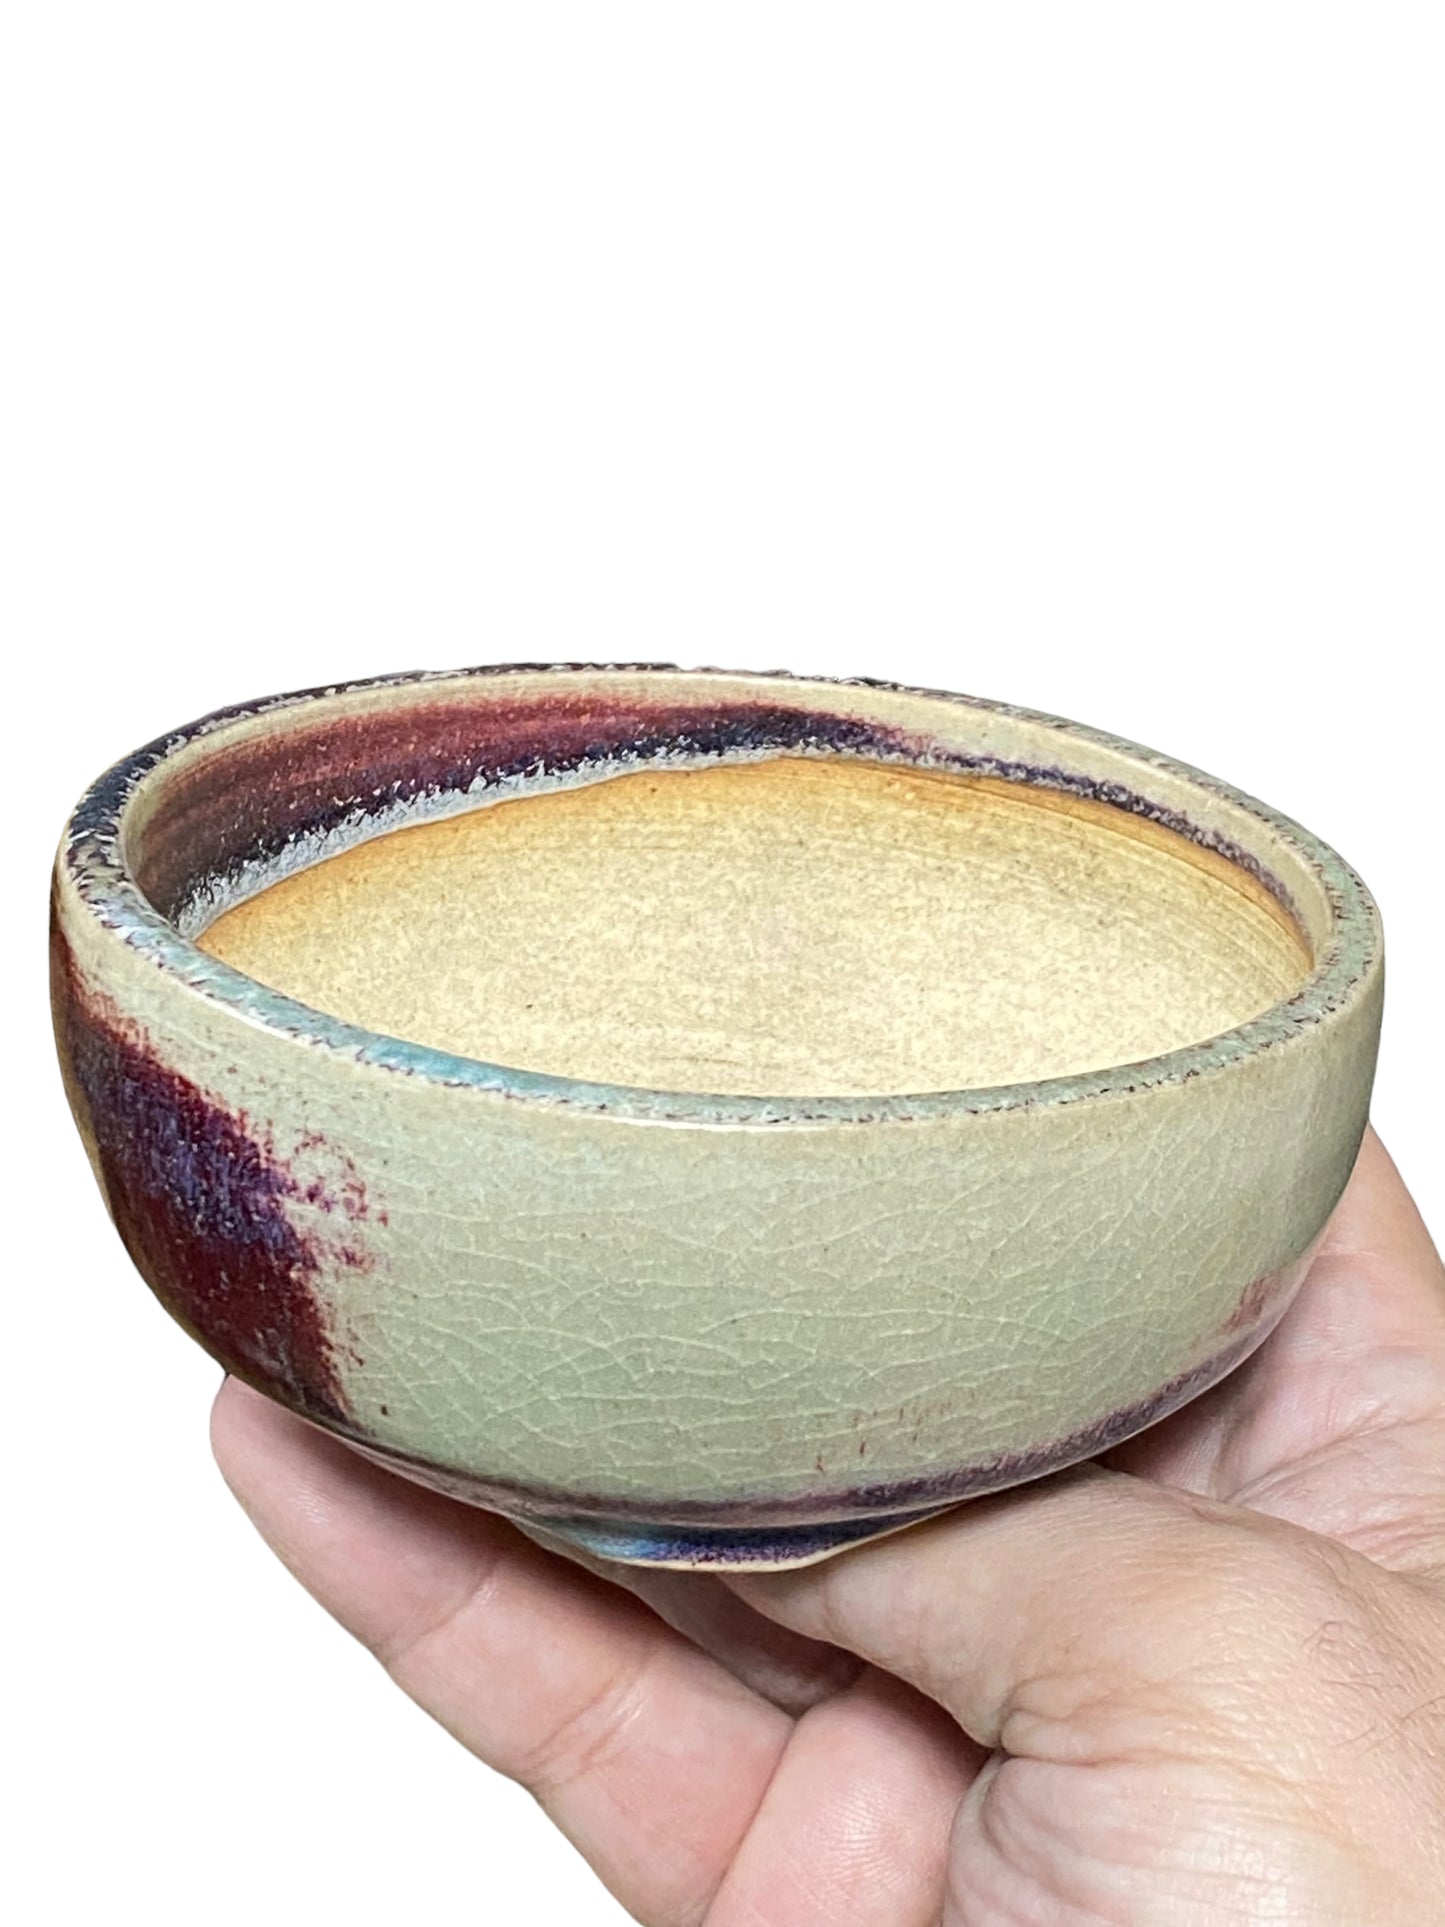 Isso - Multicolor Glazed Bowl Bonsai or Accent Pot